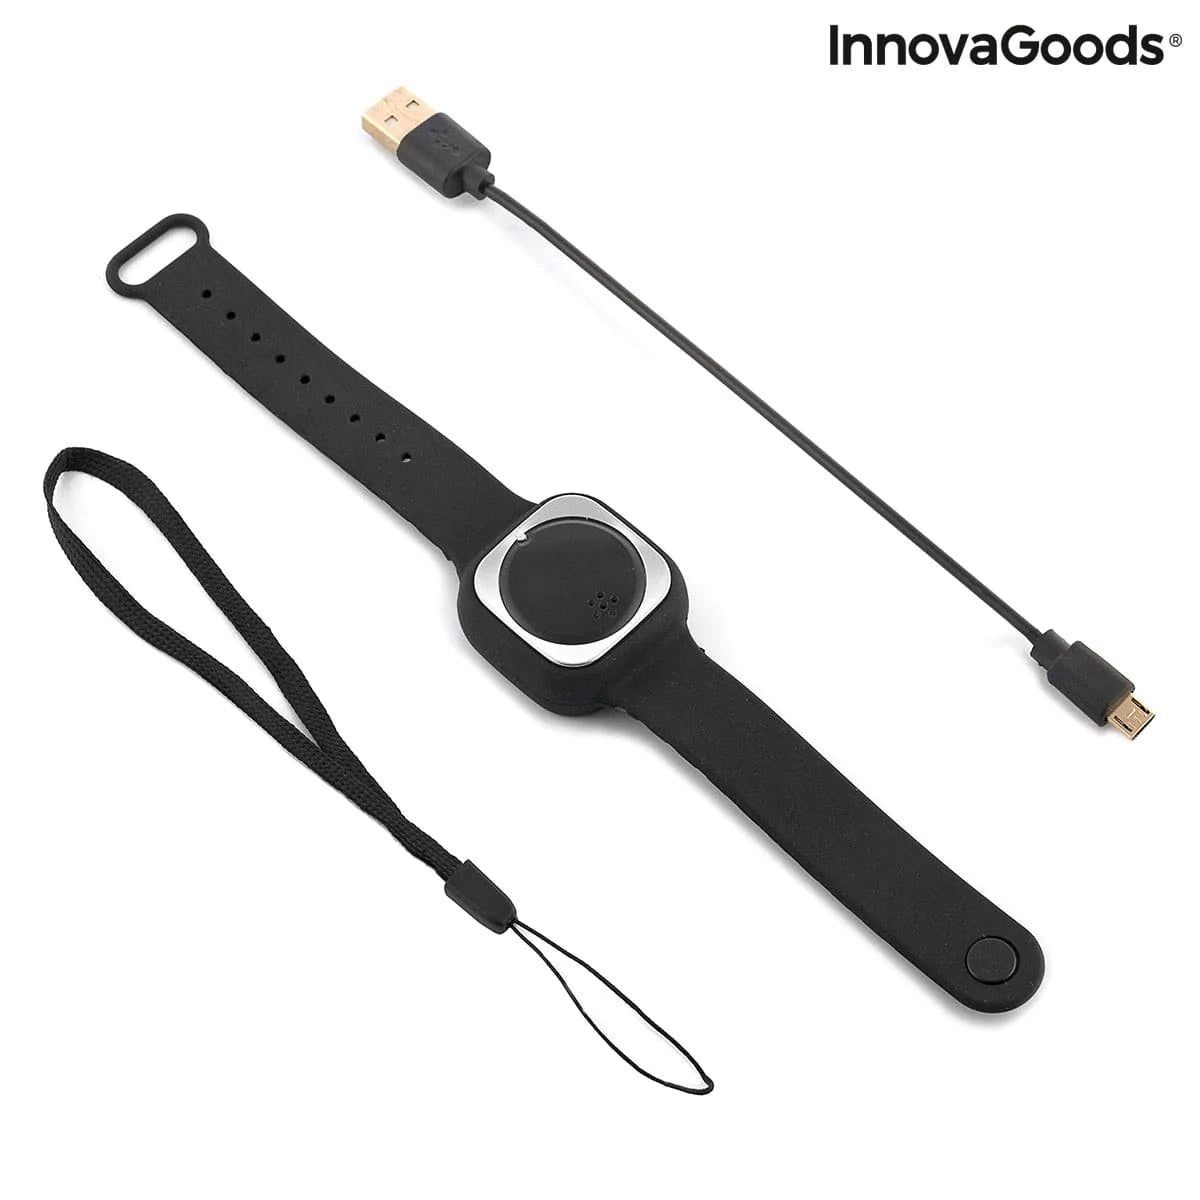 InnovaGoods Mode | Accessoires > Armbanduhren > Unisex Uhren Ultraschall-Mückenschutzuhr Wristquitto InnovaGoods V0103460